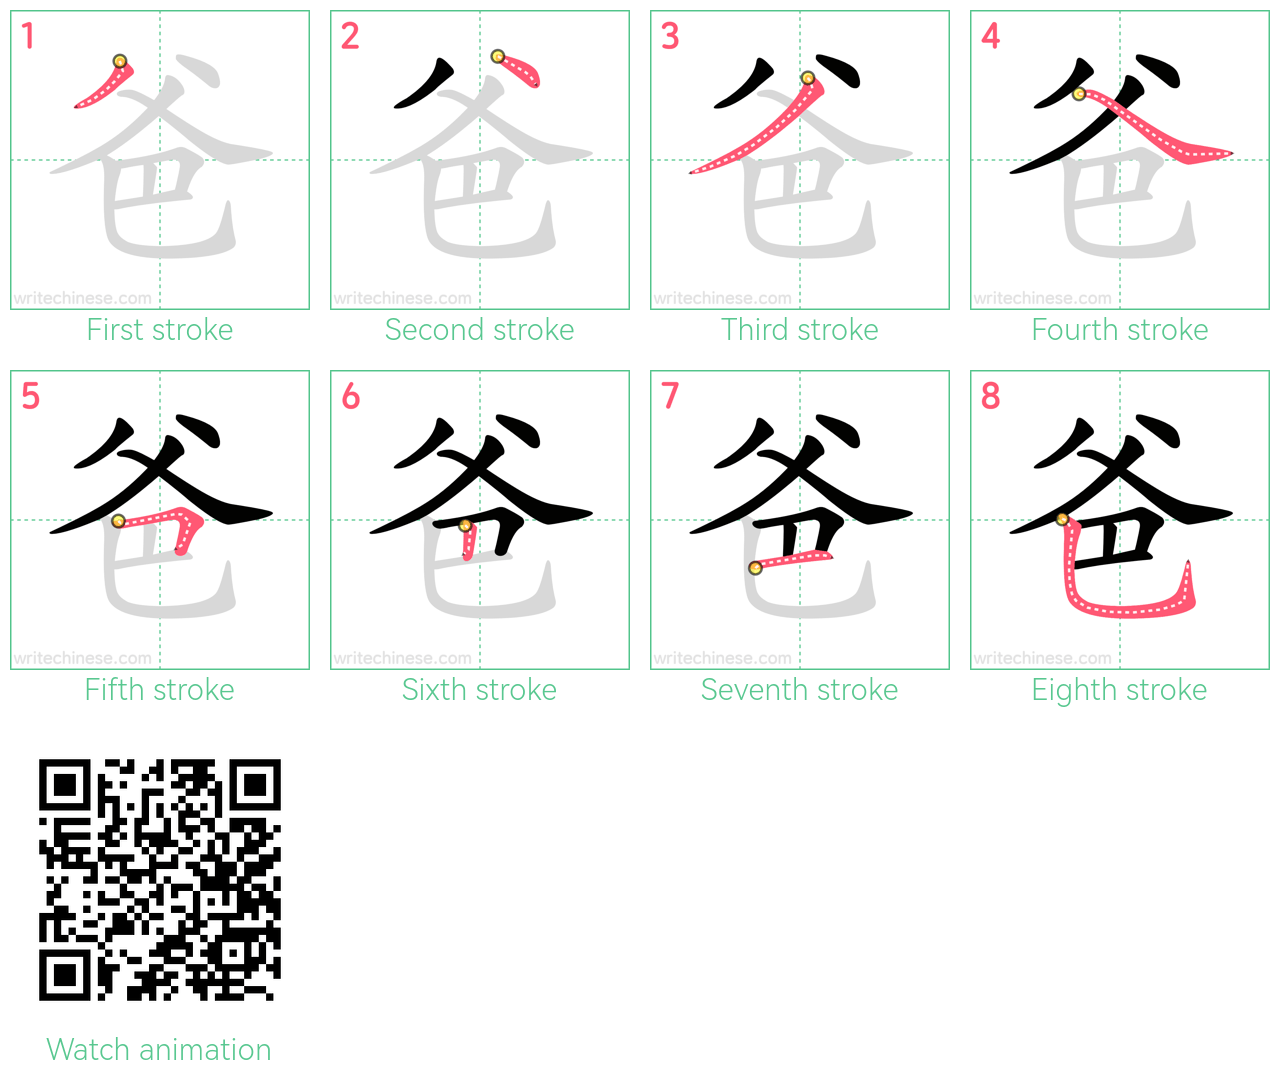 爸 step-by-step stroke order diagrams